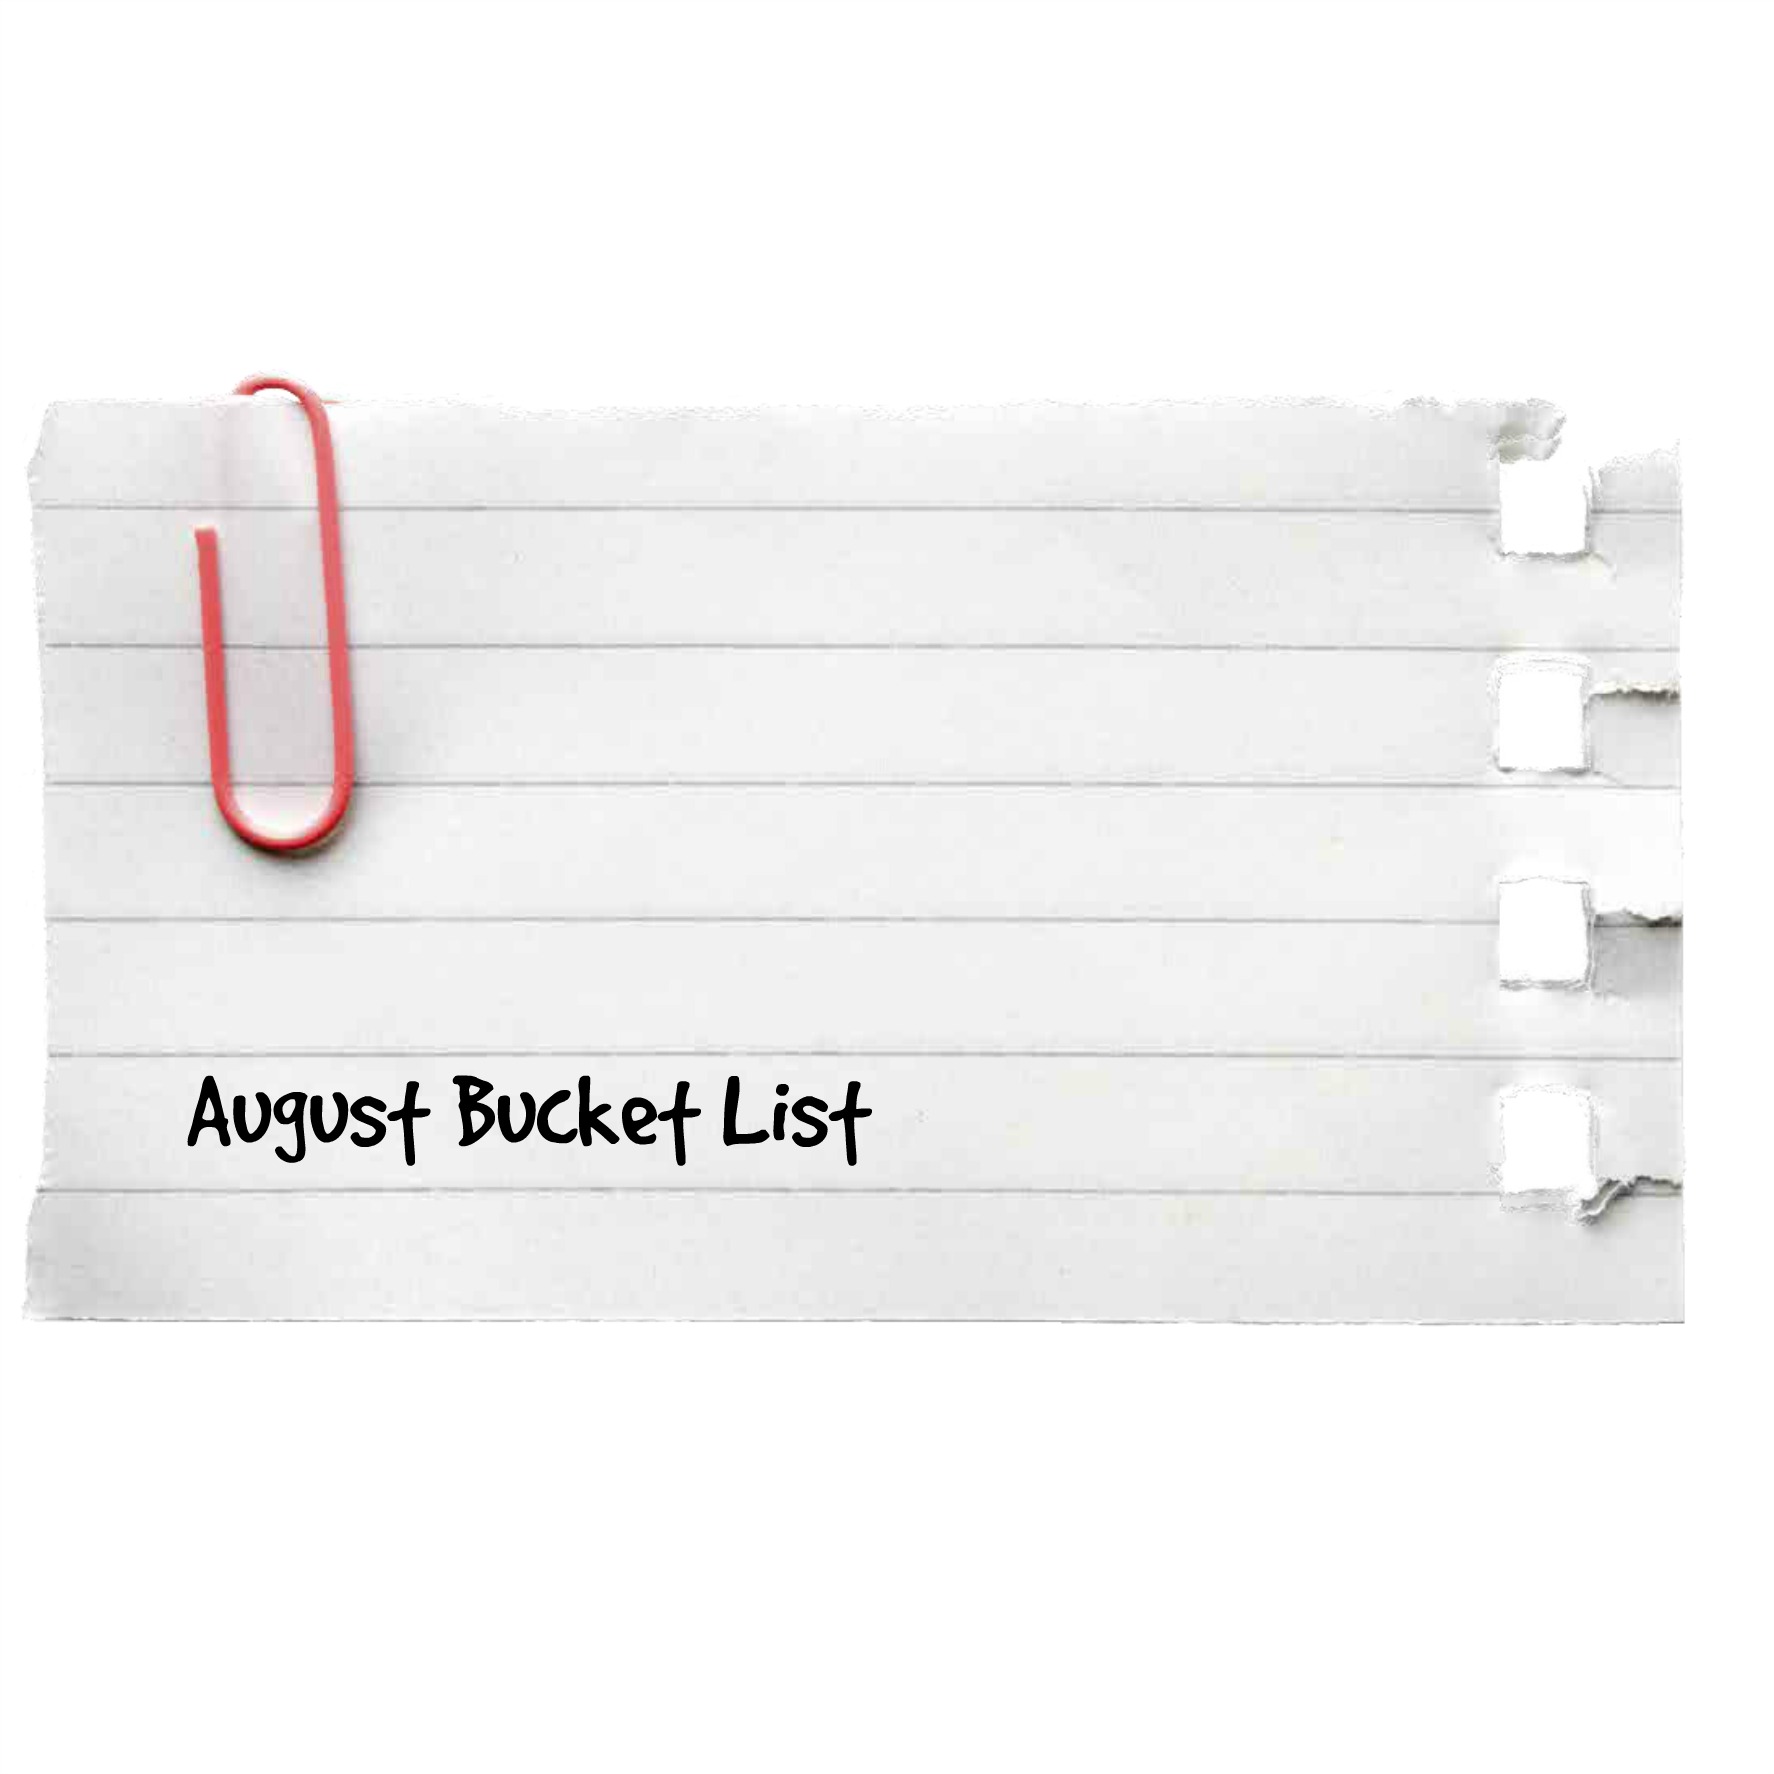 August Bucket List